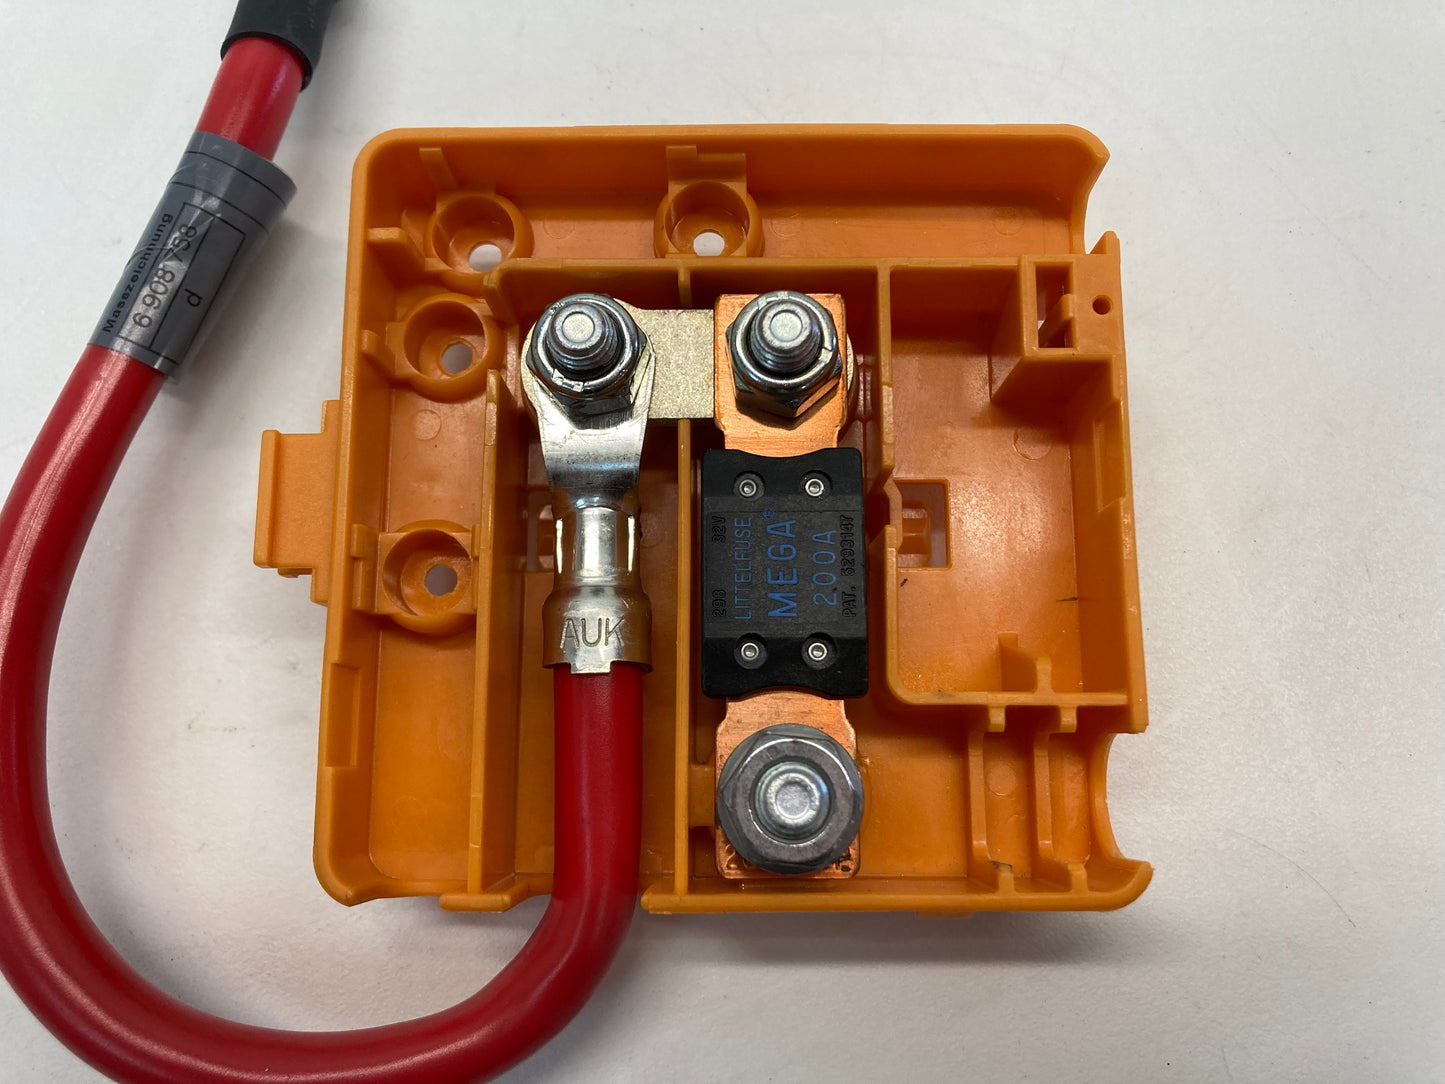 Mini Cooper S Fuse Module with B+ Wire 61131508927 02-08 R52 R53